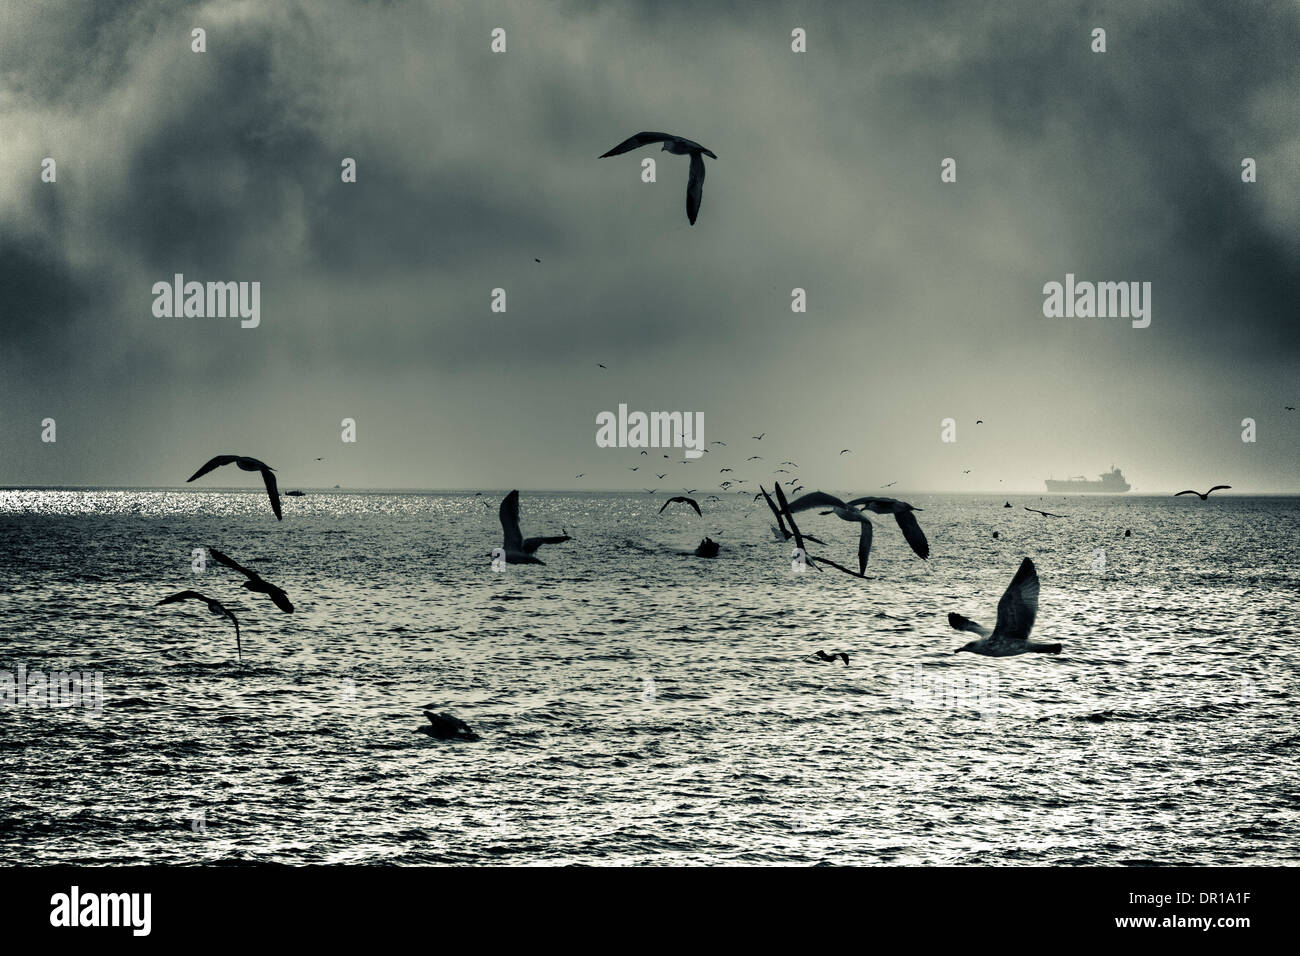 Dramatic sea gull flight, abstract creative toned photo. Stock Photo